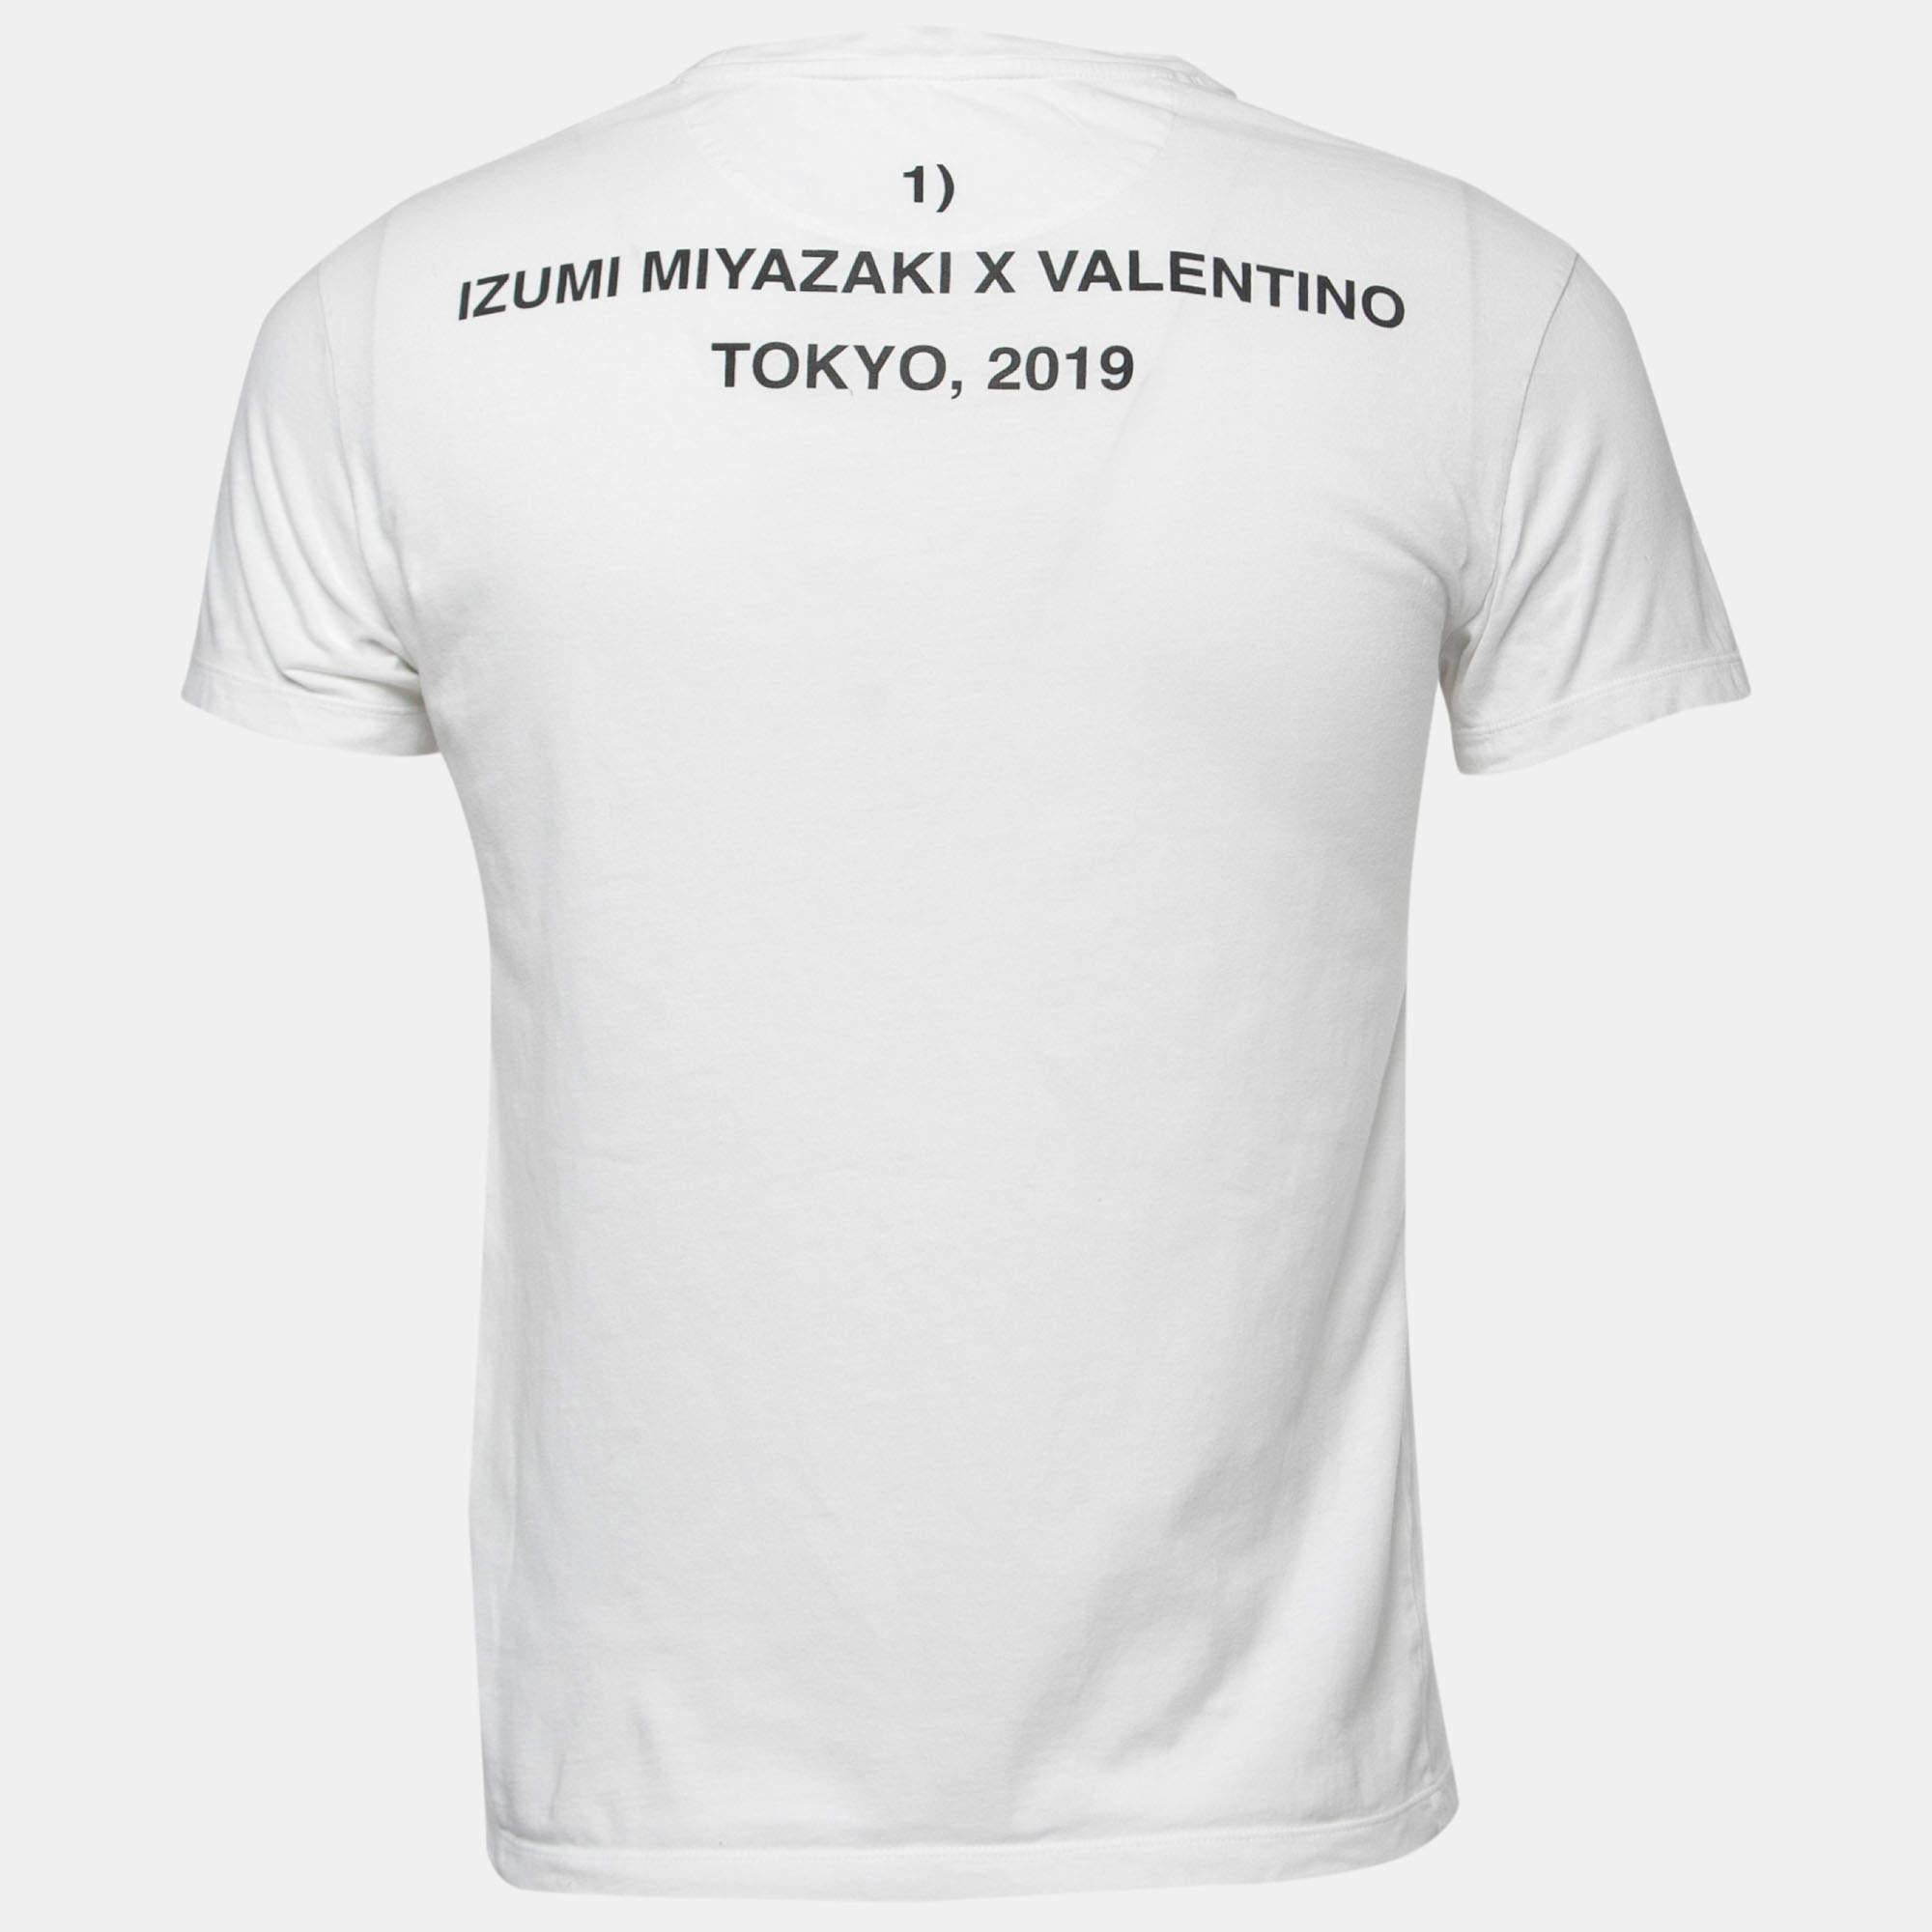 Mit diesem T-Shirt von Valentino X Izumi Miyazaki können Sie sich den ganzen Tag lang wohlfühlen. Das weiße T-Shirt mit Rundhalsausschnitt, auffälligem Druck und kurzen Ärmeln ist wunderschön genäht und garantiert Qualität und schlichten Stil.

